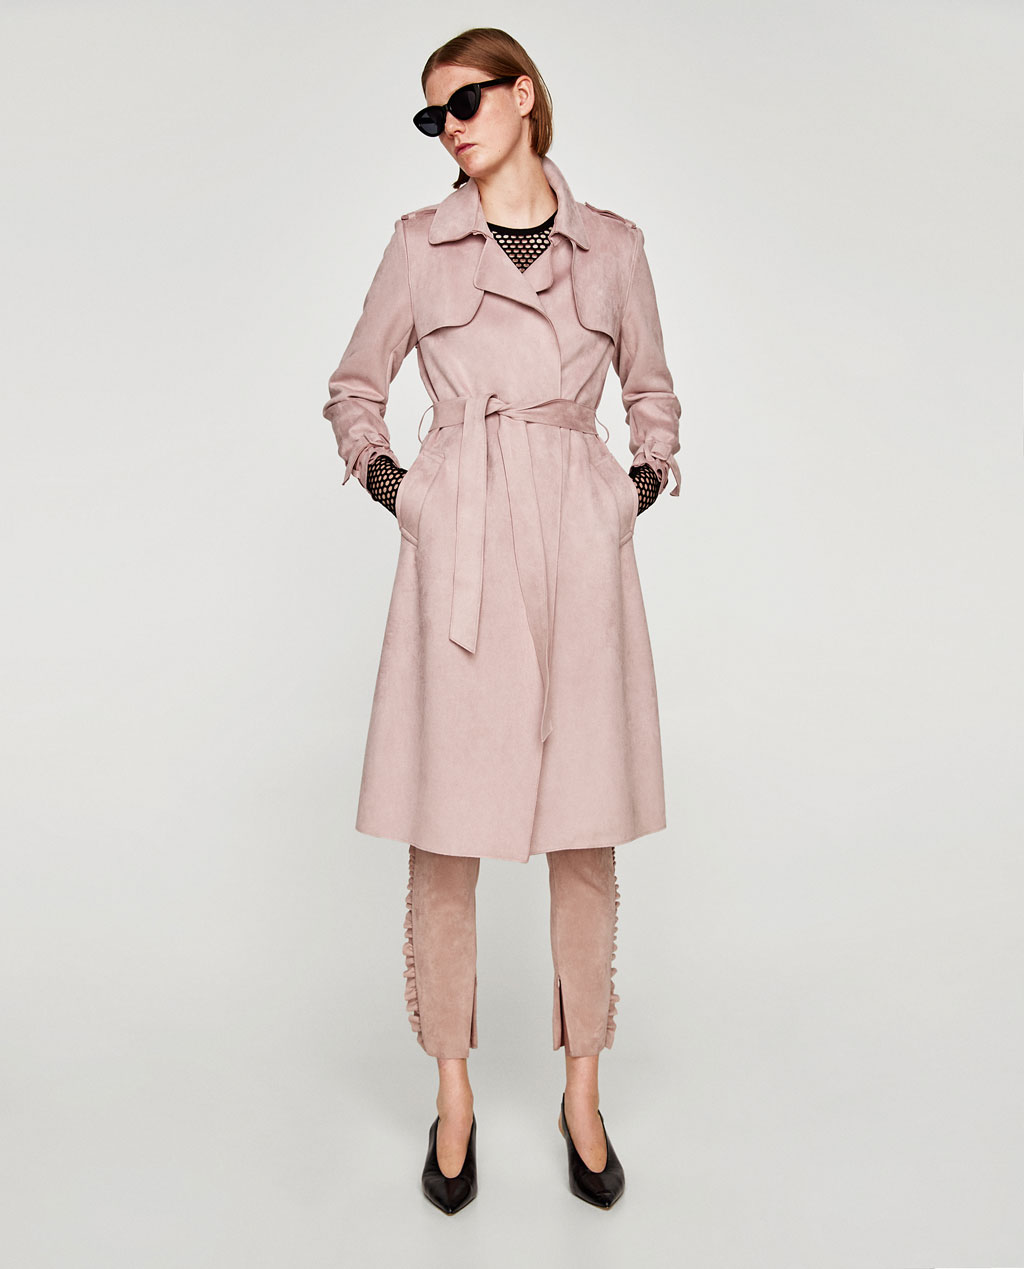 Zara Pink Suede Trench Coat